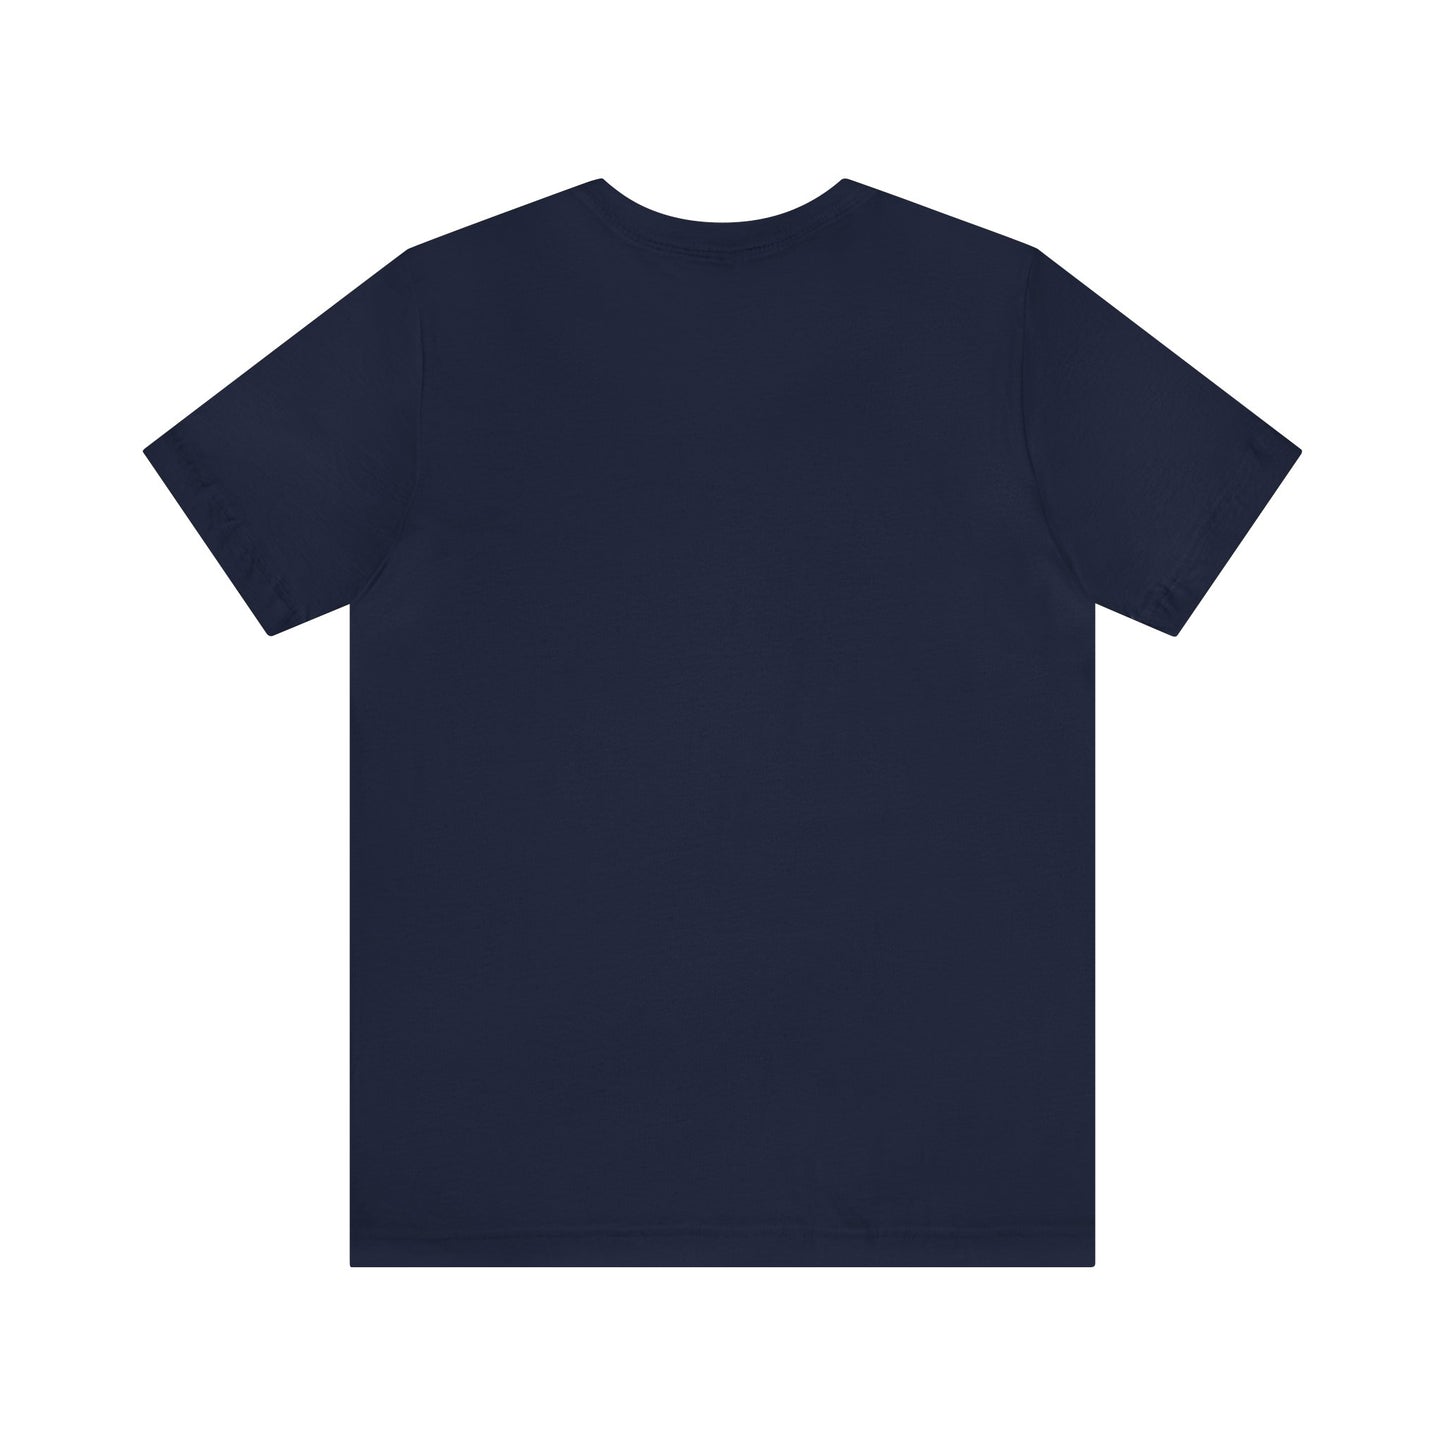 The Katt Williams T-shirt